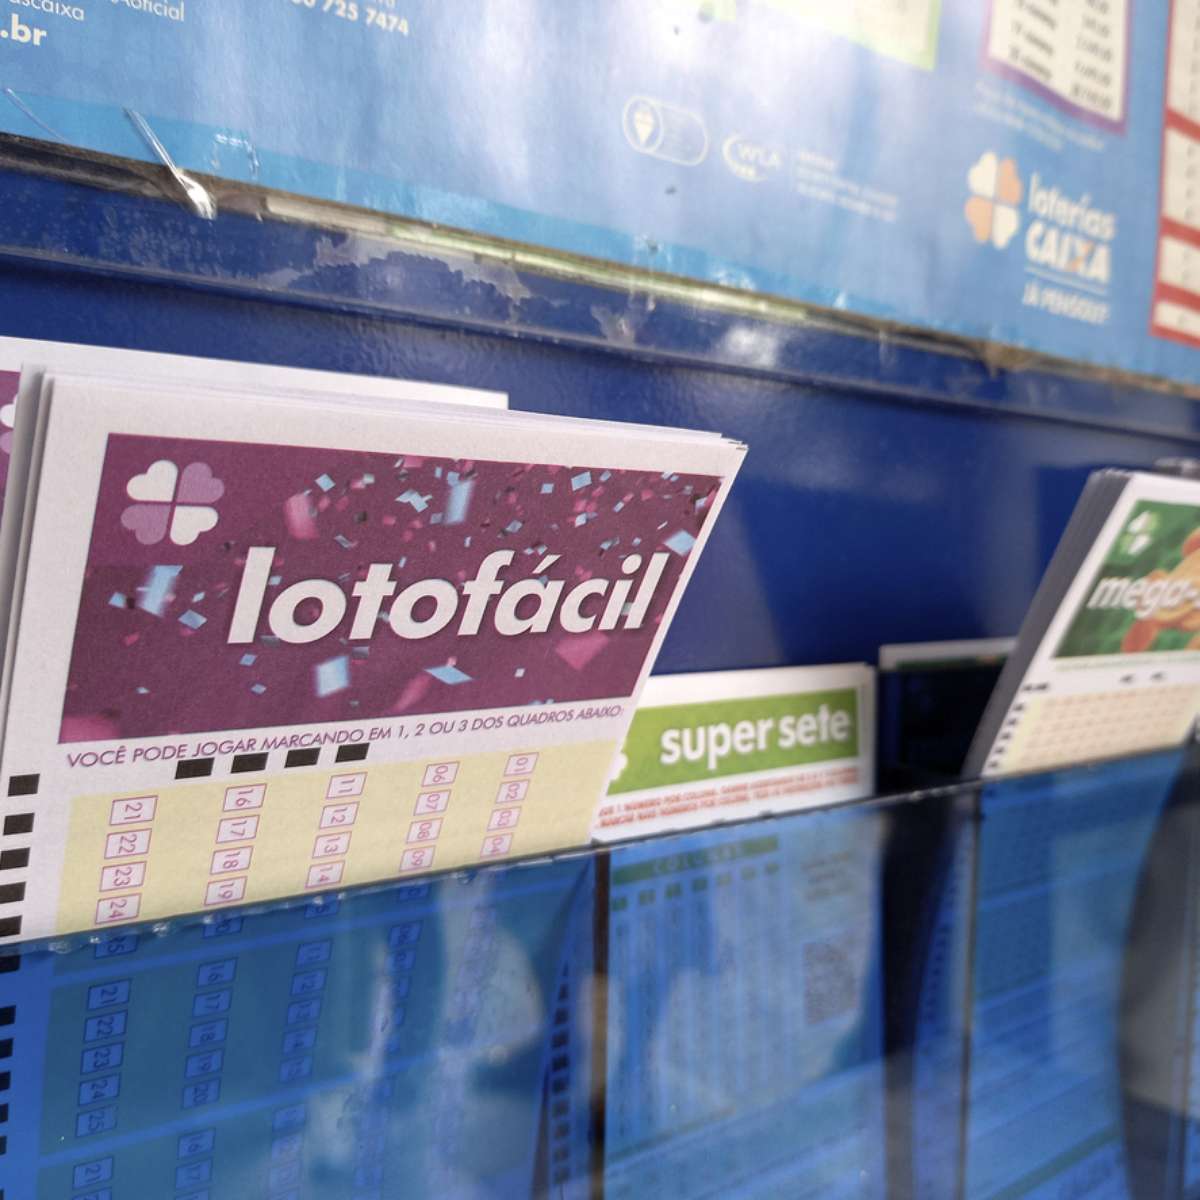 Entenda como funciona o bolão das loterias da Caixa, Loterias